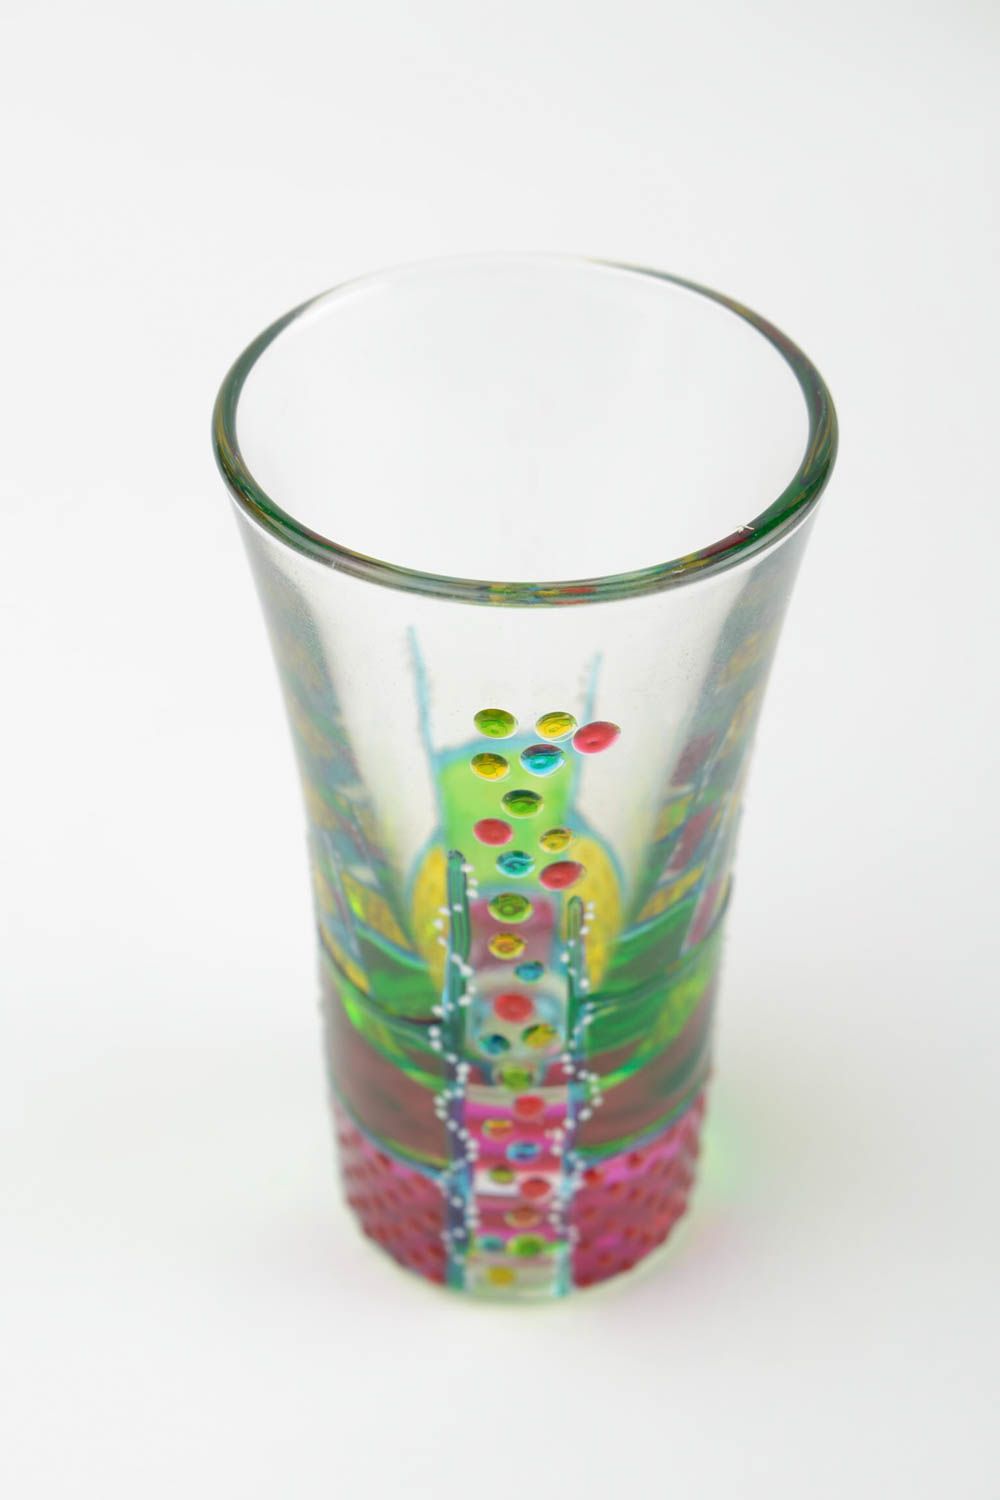 Handmade shot glasses designer glass tableware ideas for home decor photo 3